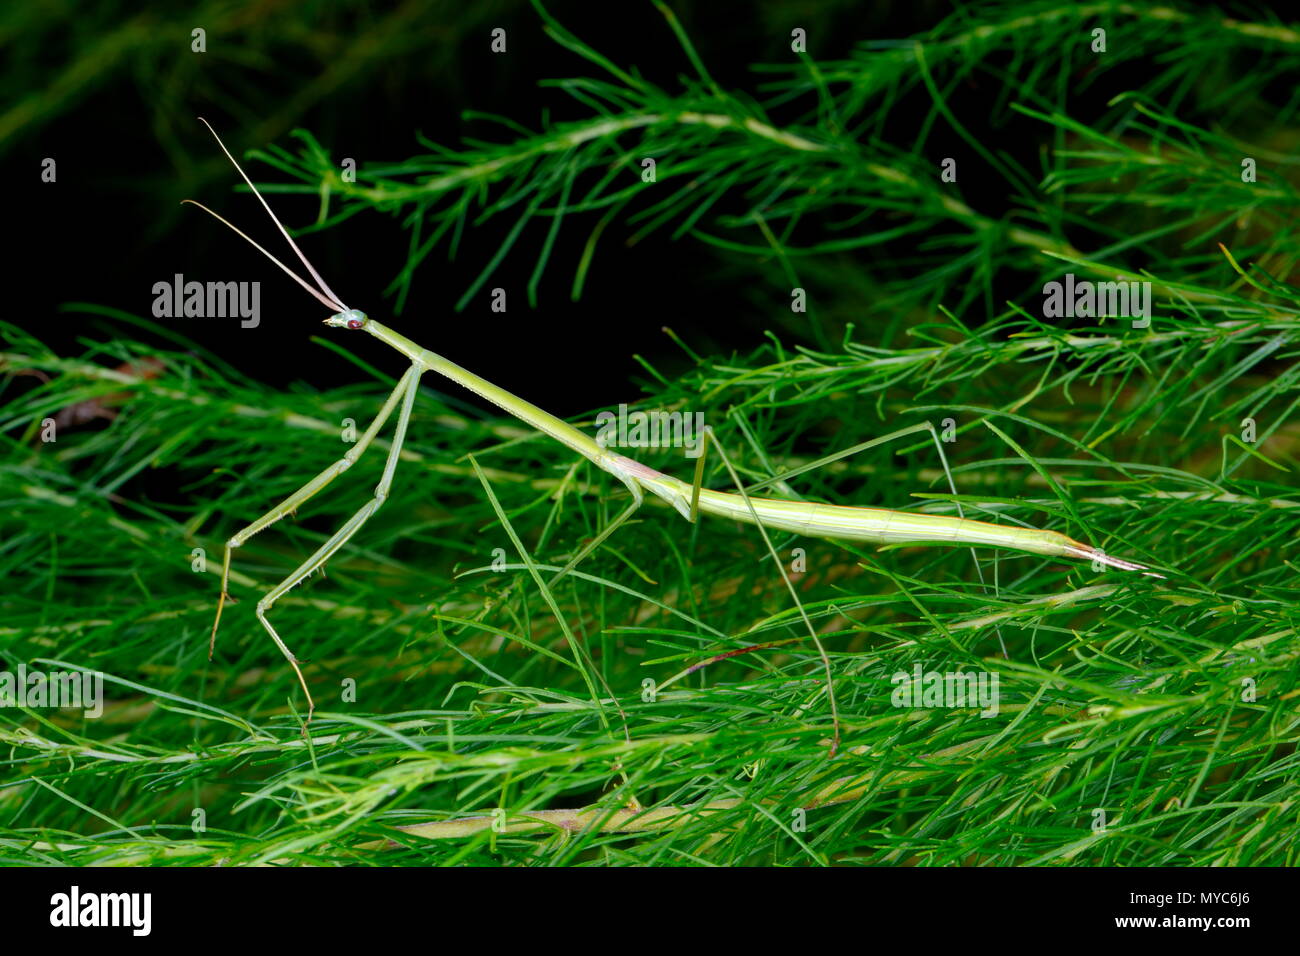 Un Brunner's stick mantis, Brunneria borealis, qui se nourrissent de plantes. Banque D'Images